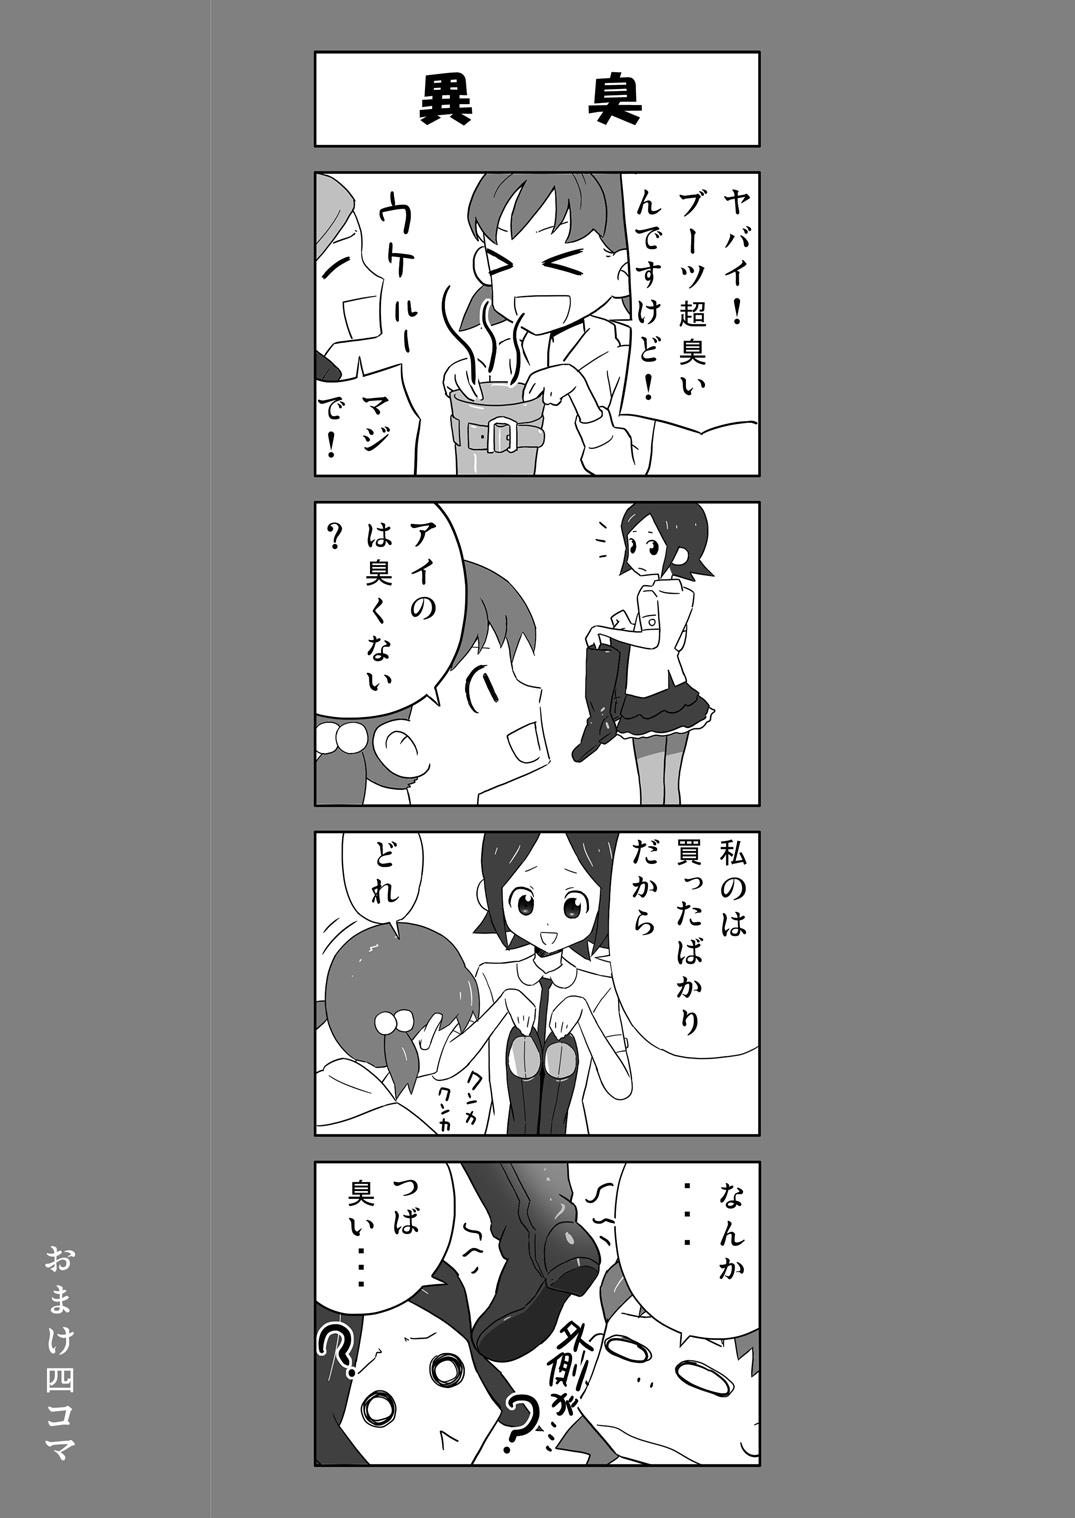 [Enka Boots] Enka Boots no Manga 1 - Juku no Sensei ga Joou-sama V2.0 2